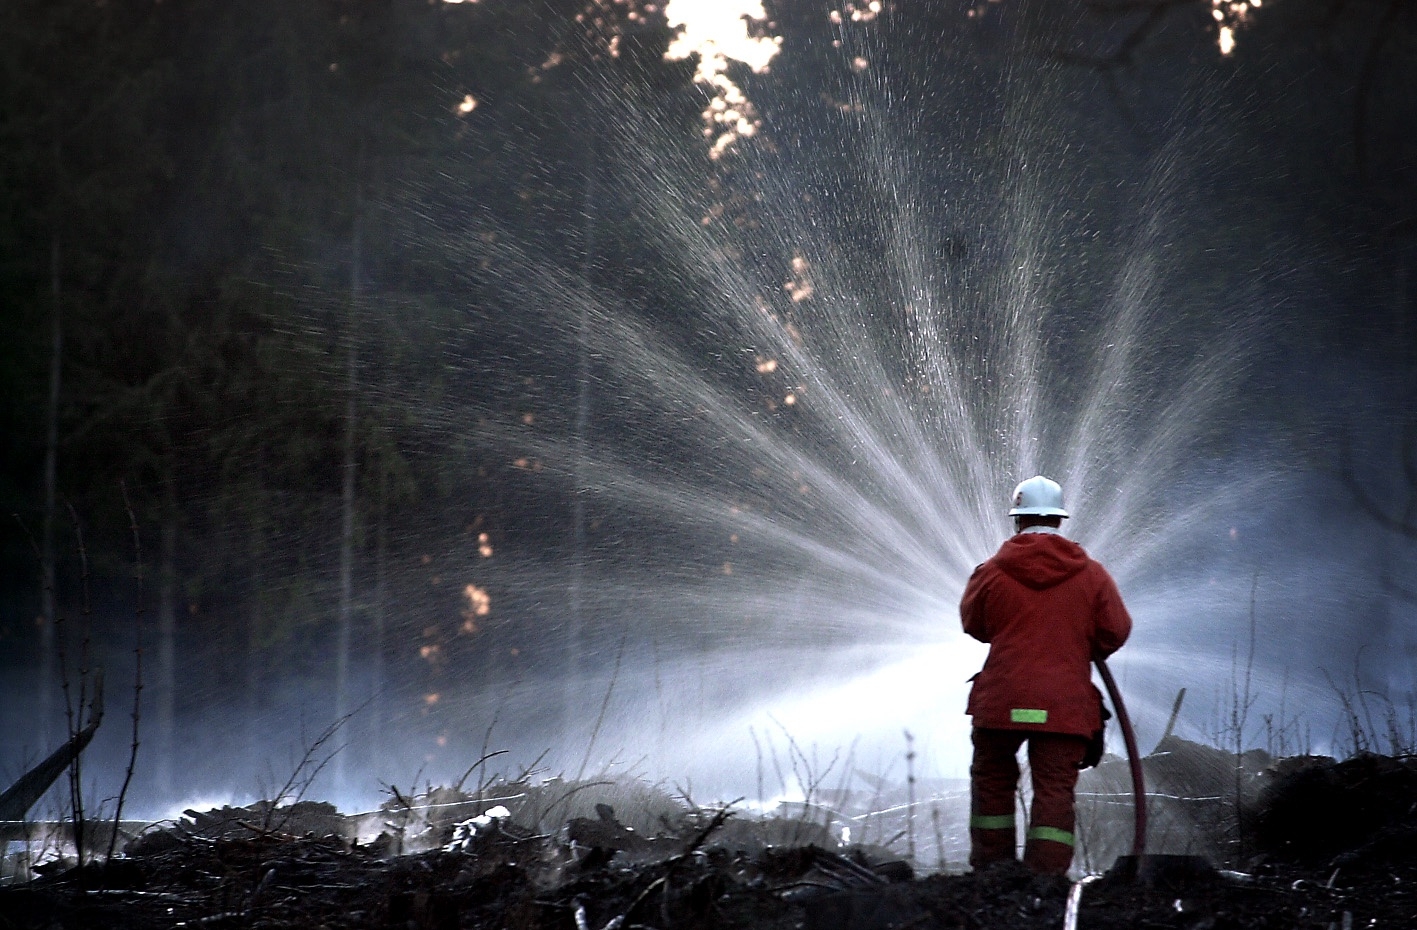 Bränderna i norra Sverige kommer inte att påverka skogspriserna på längre sikt, bedömer Markus Helin.
Foto: Patric Berg